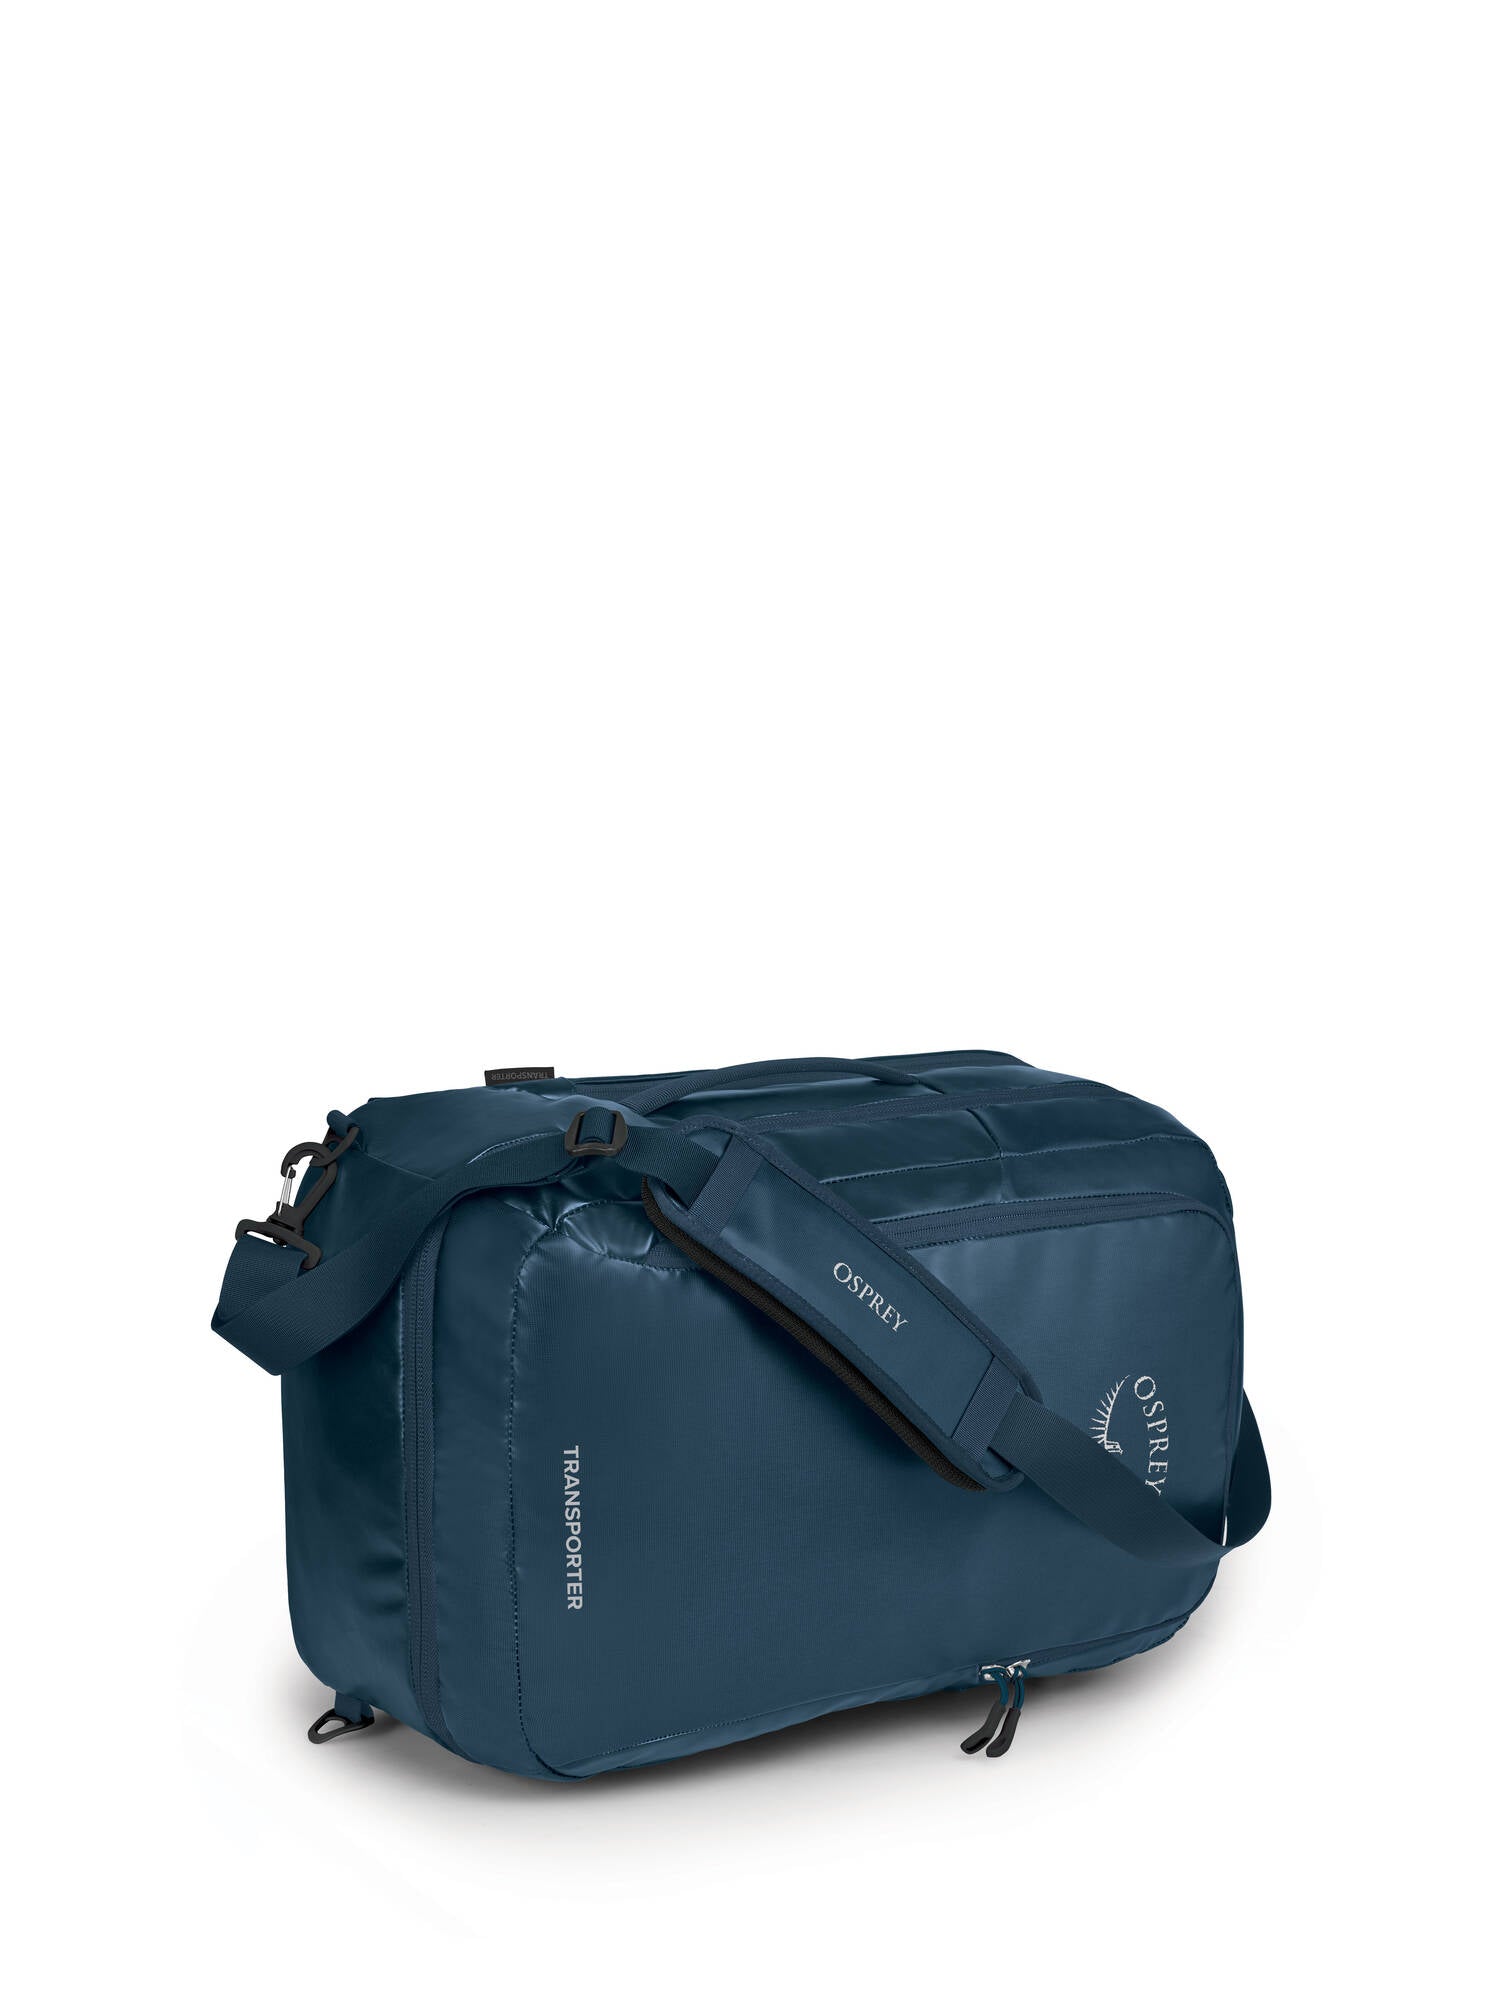 Transporter Carry-On Bag